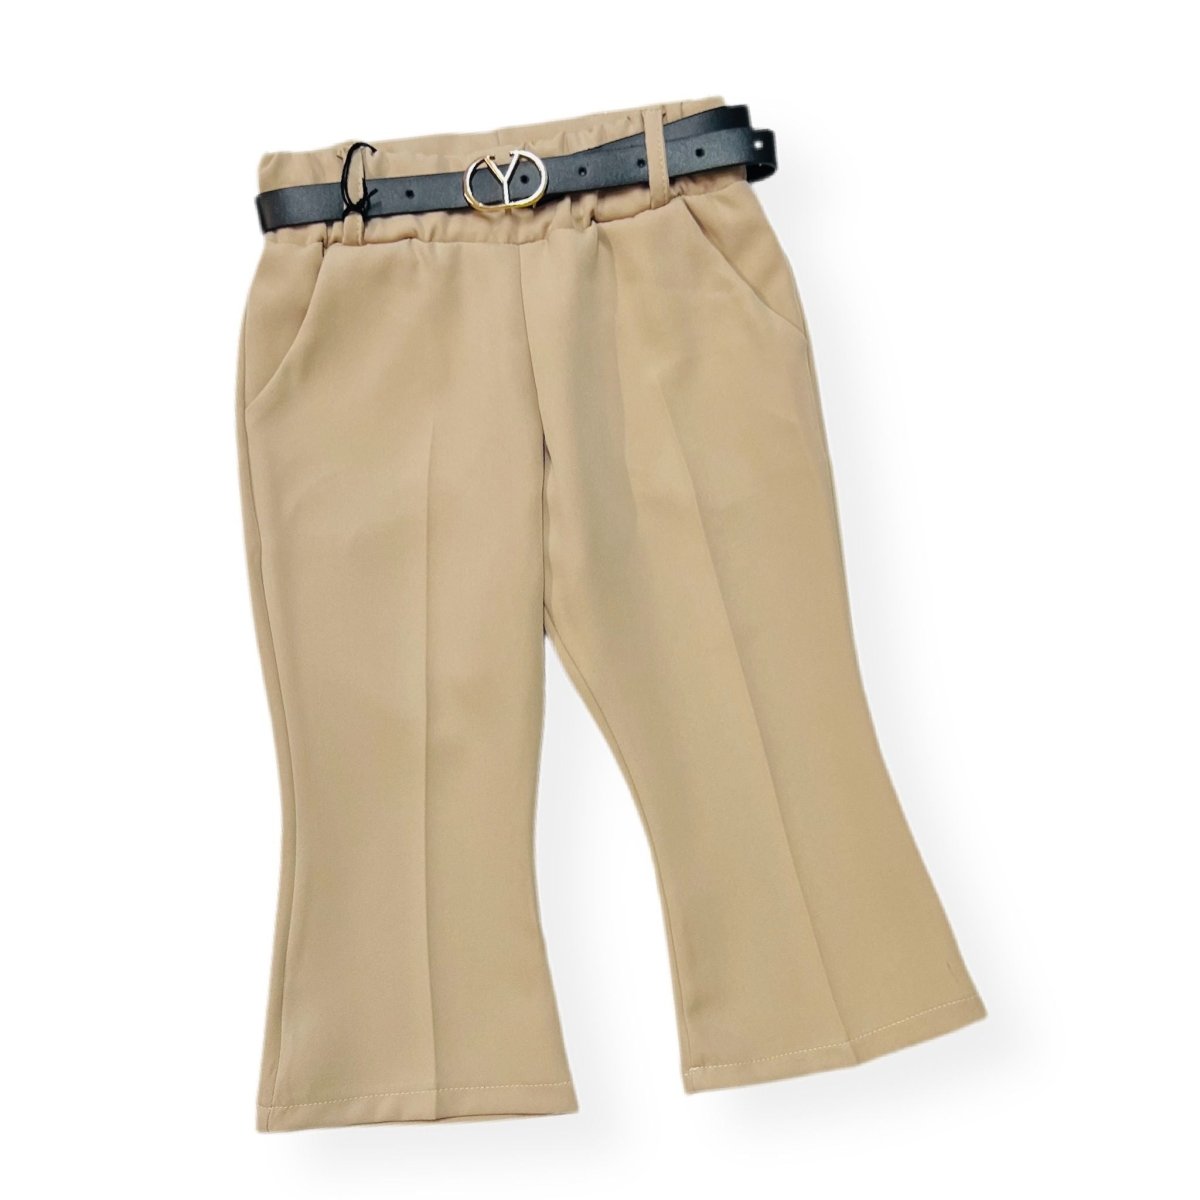 Pantalone a Zampa leggero Bimba - Mstore016 - Pantalone Bimba - Granada